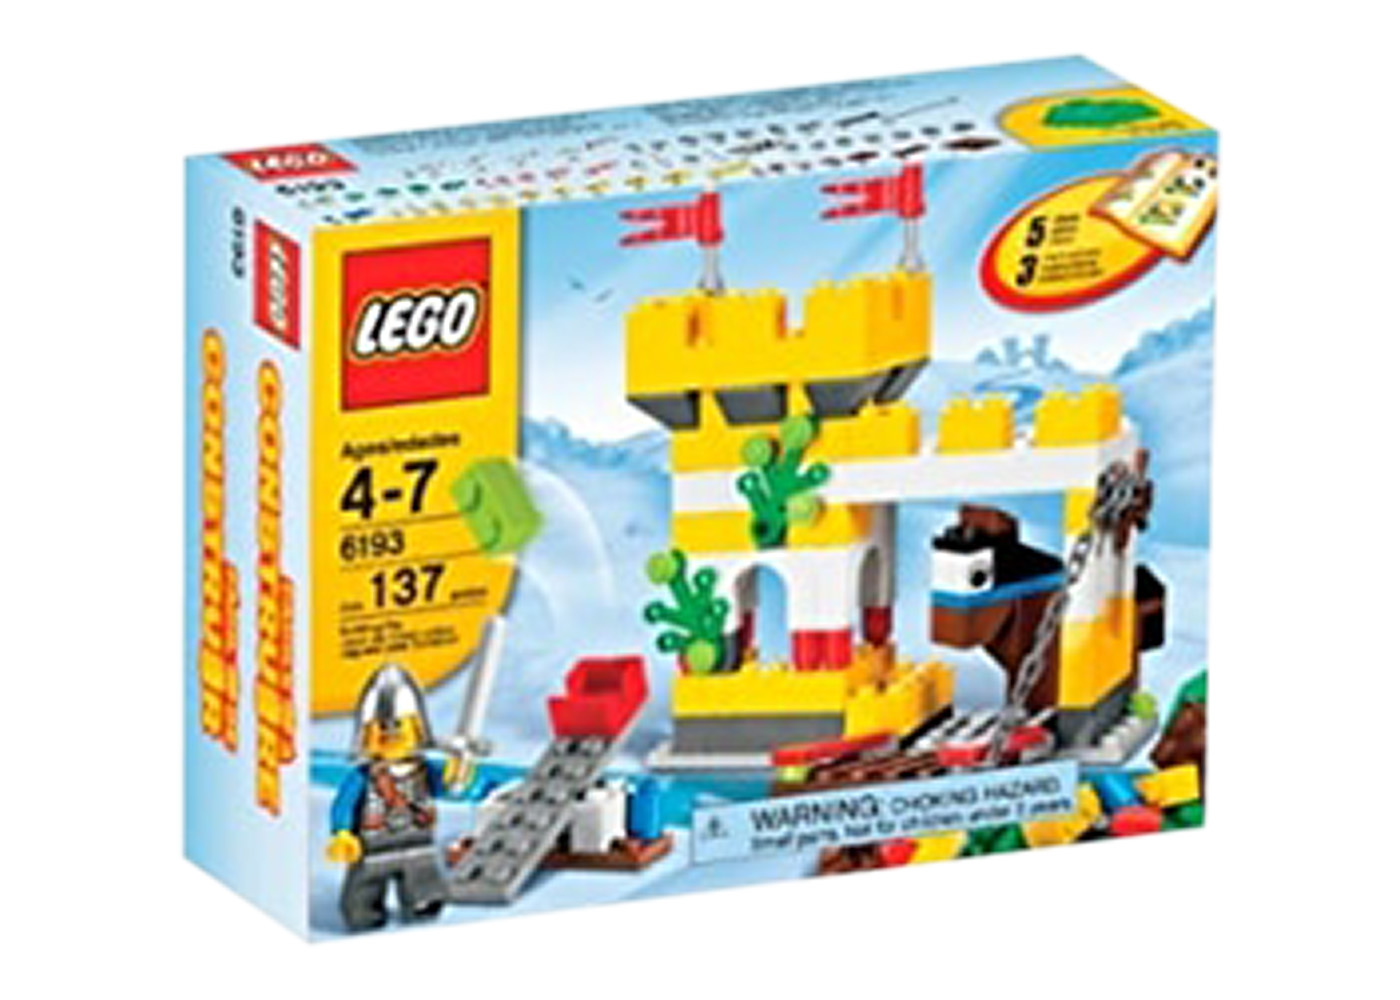 LEGO Castle Building Set 6193